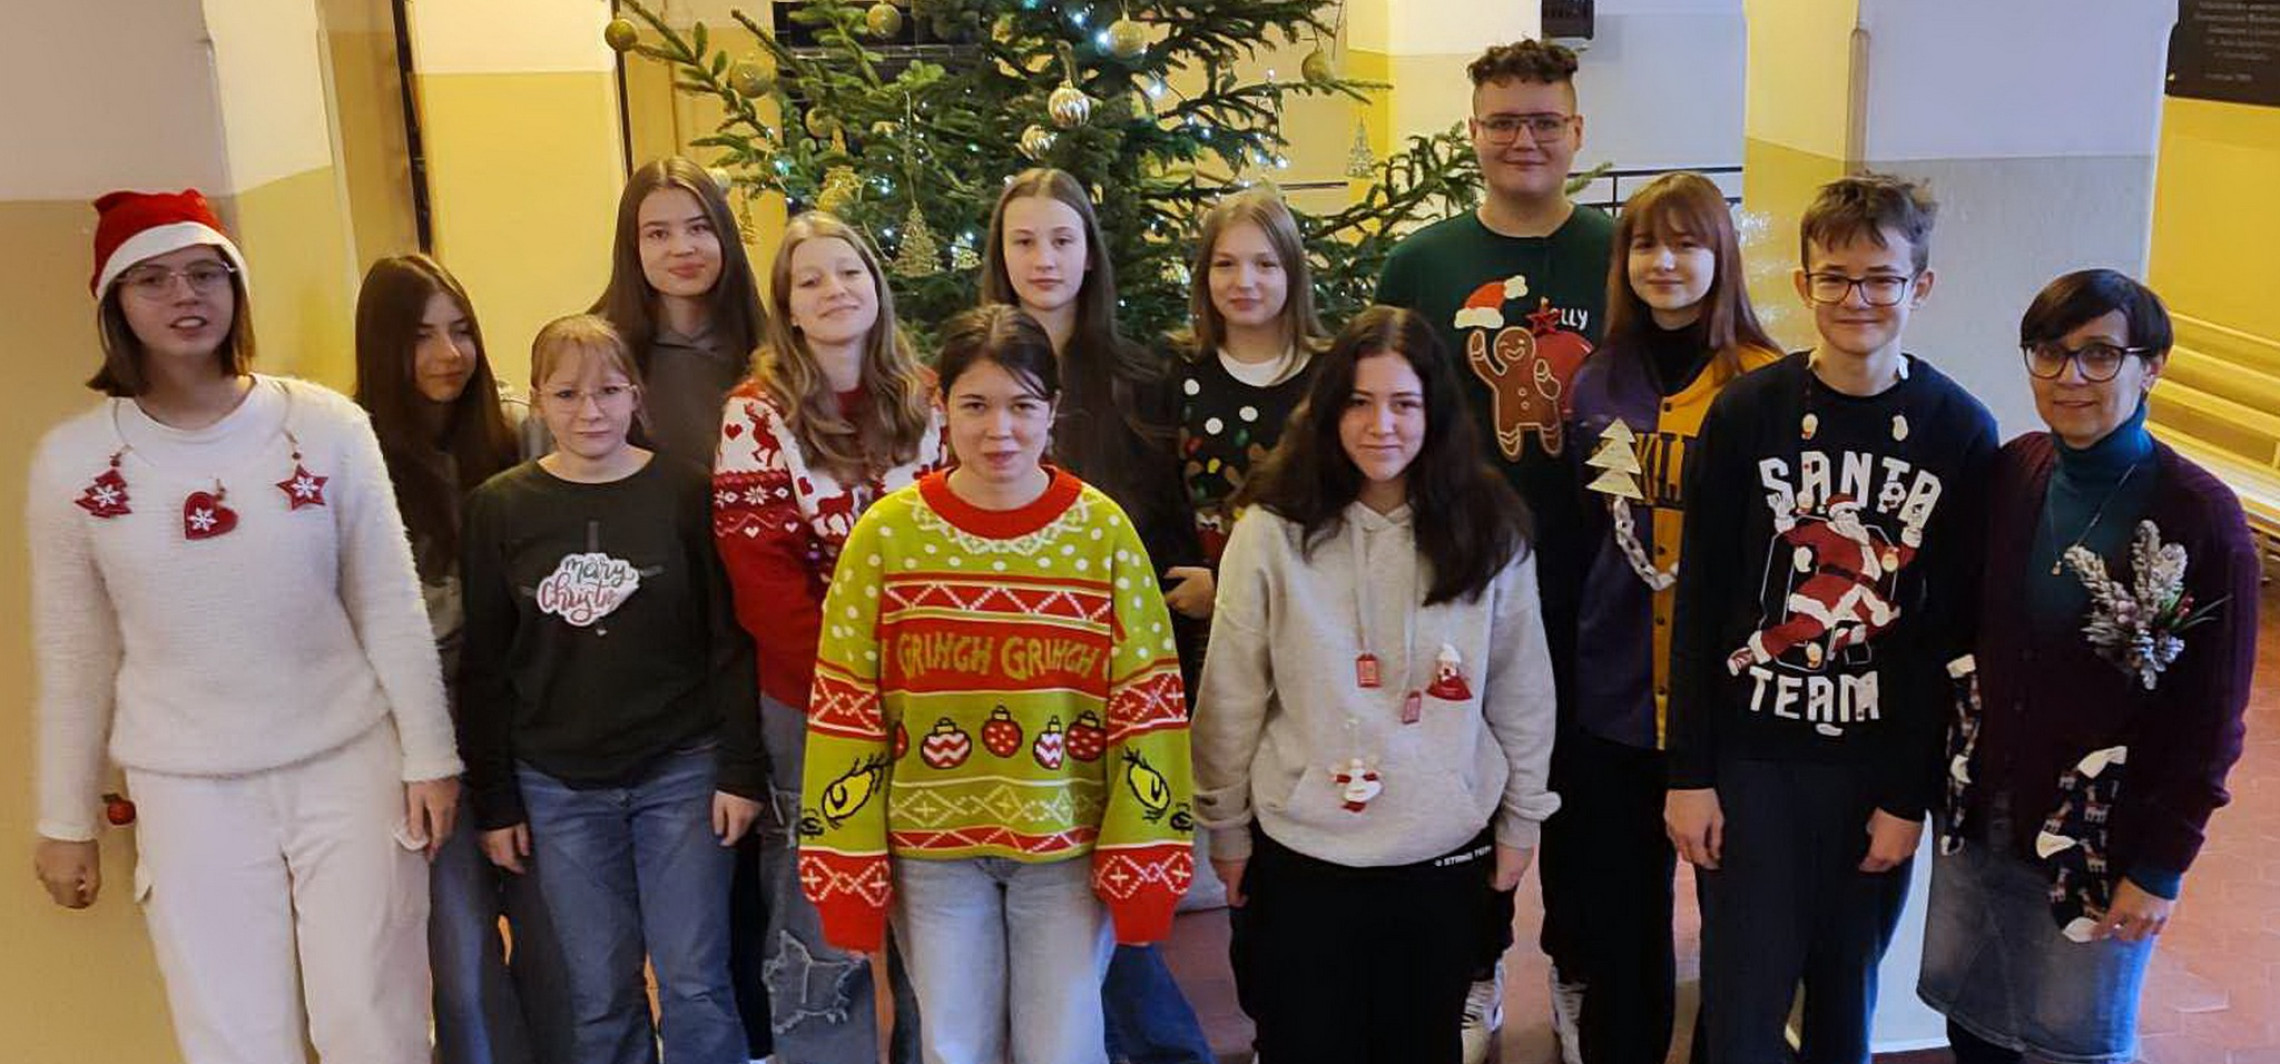 Inowrocław - Ubrali się w najbrzydsze świąteczne swetry